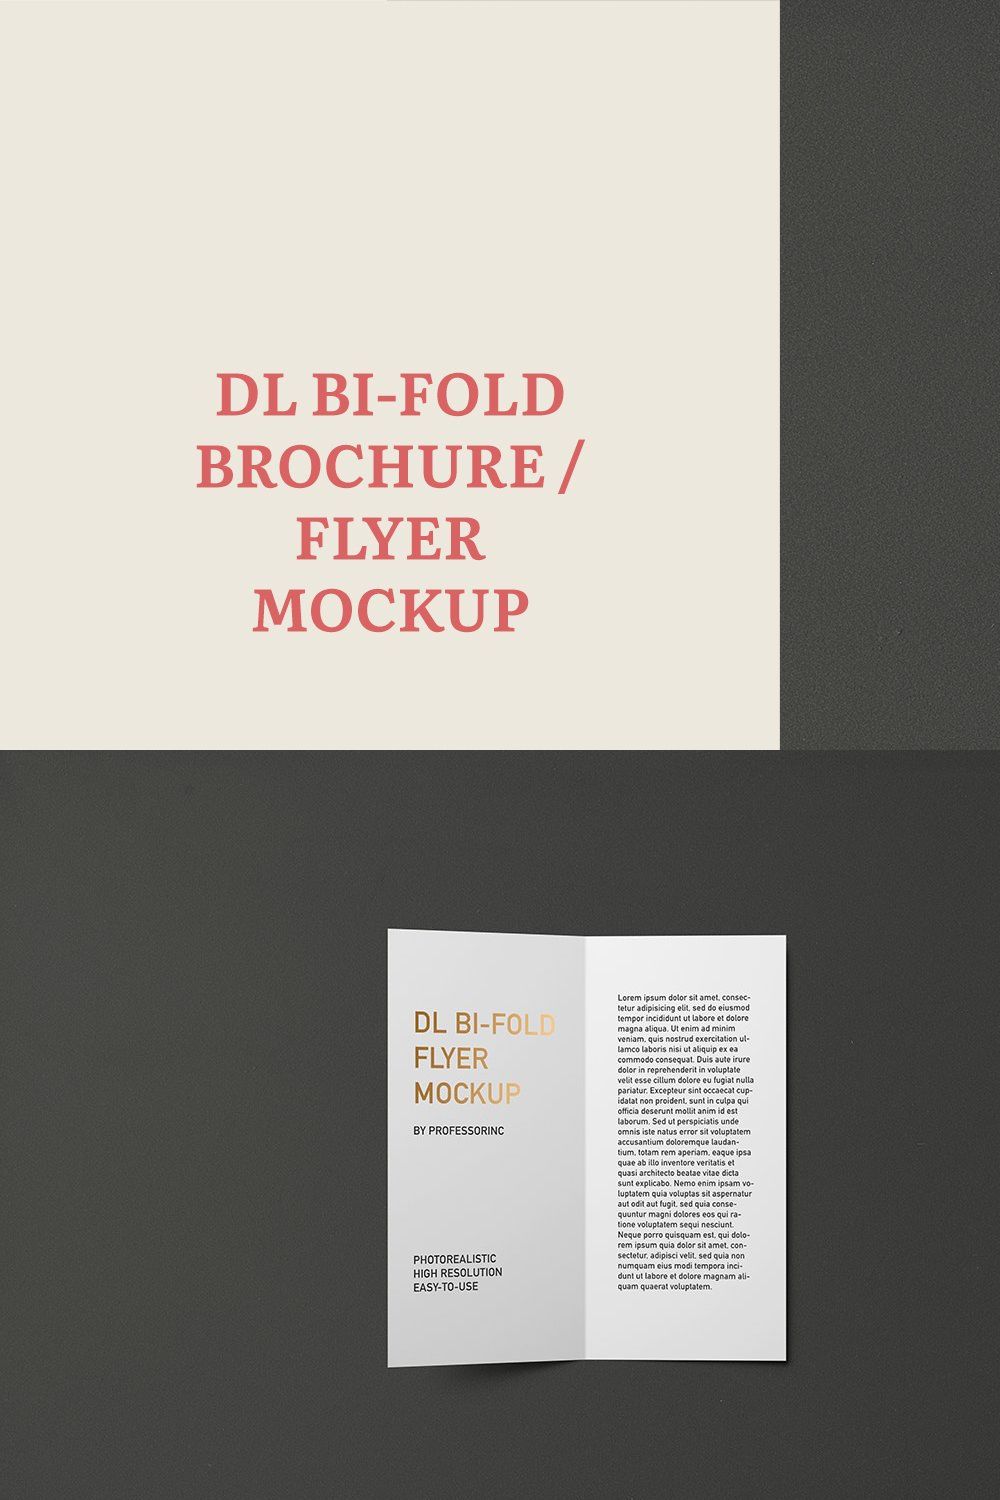 DL Bi-Fold Flyer / Brochure Mockup pinterest preview image.